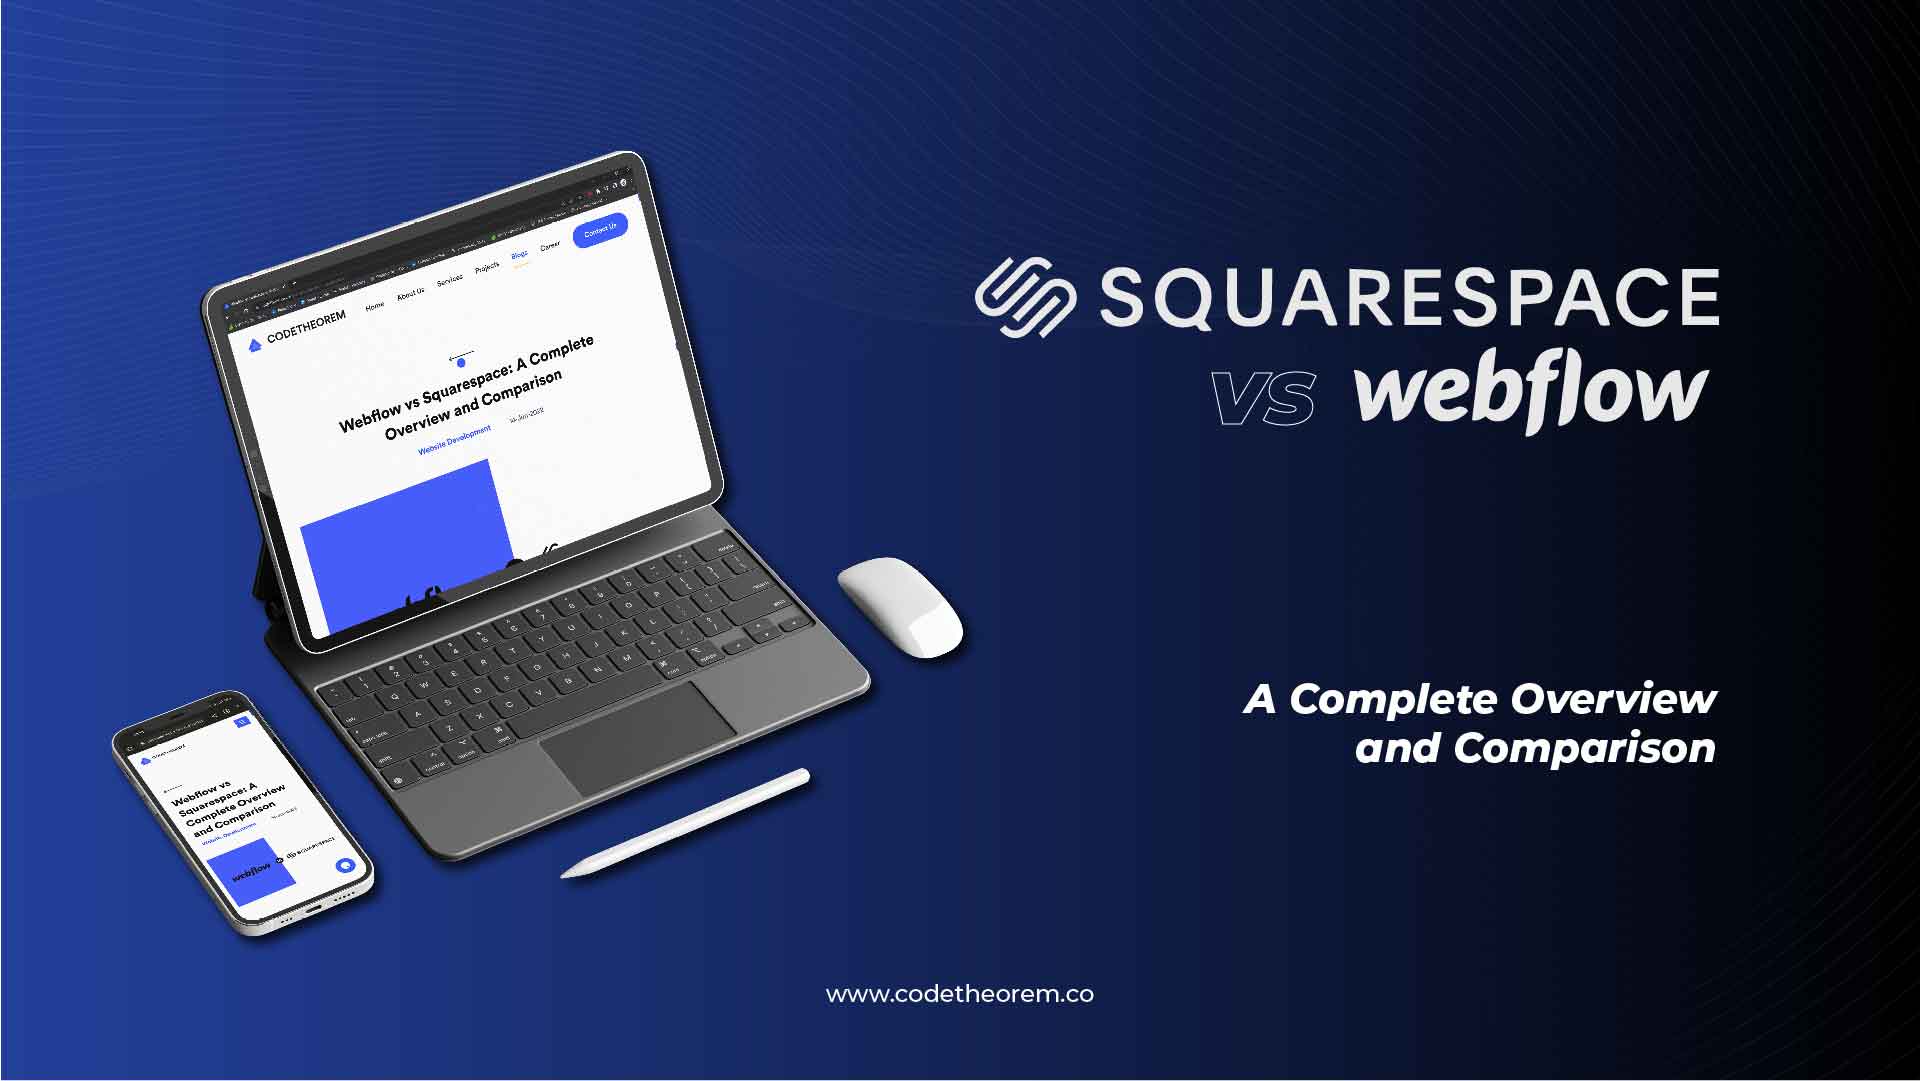 Webflow vs squarespace